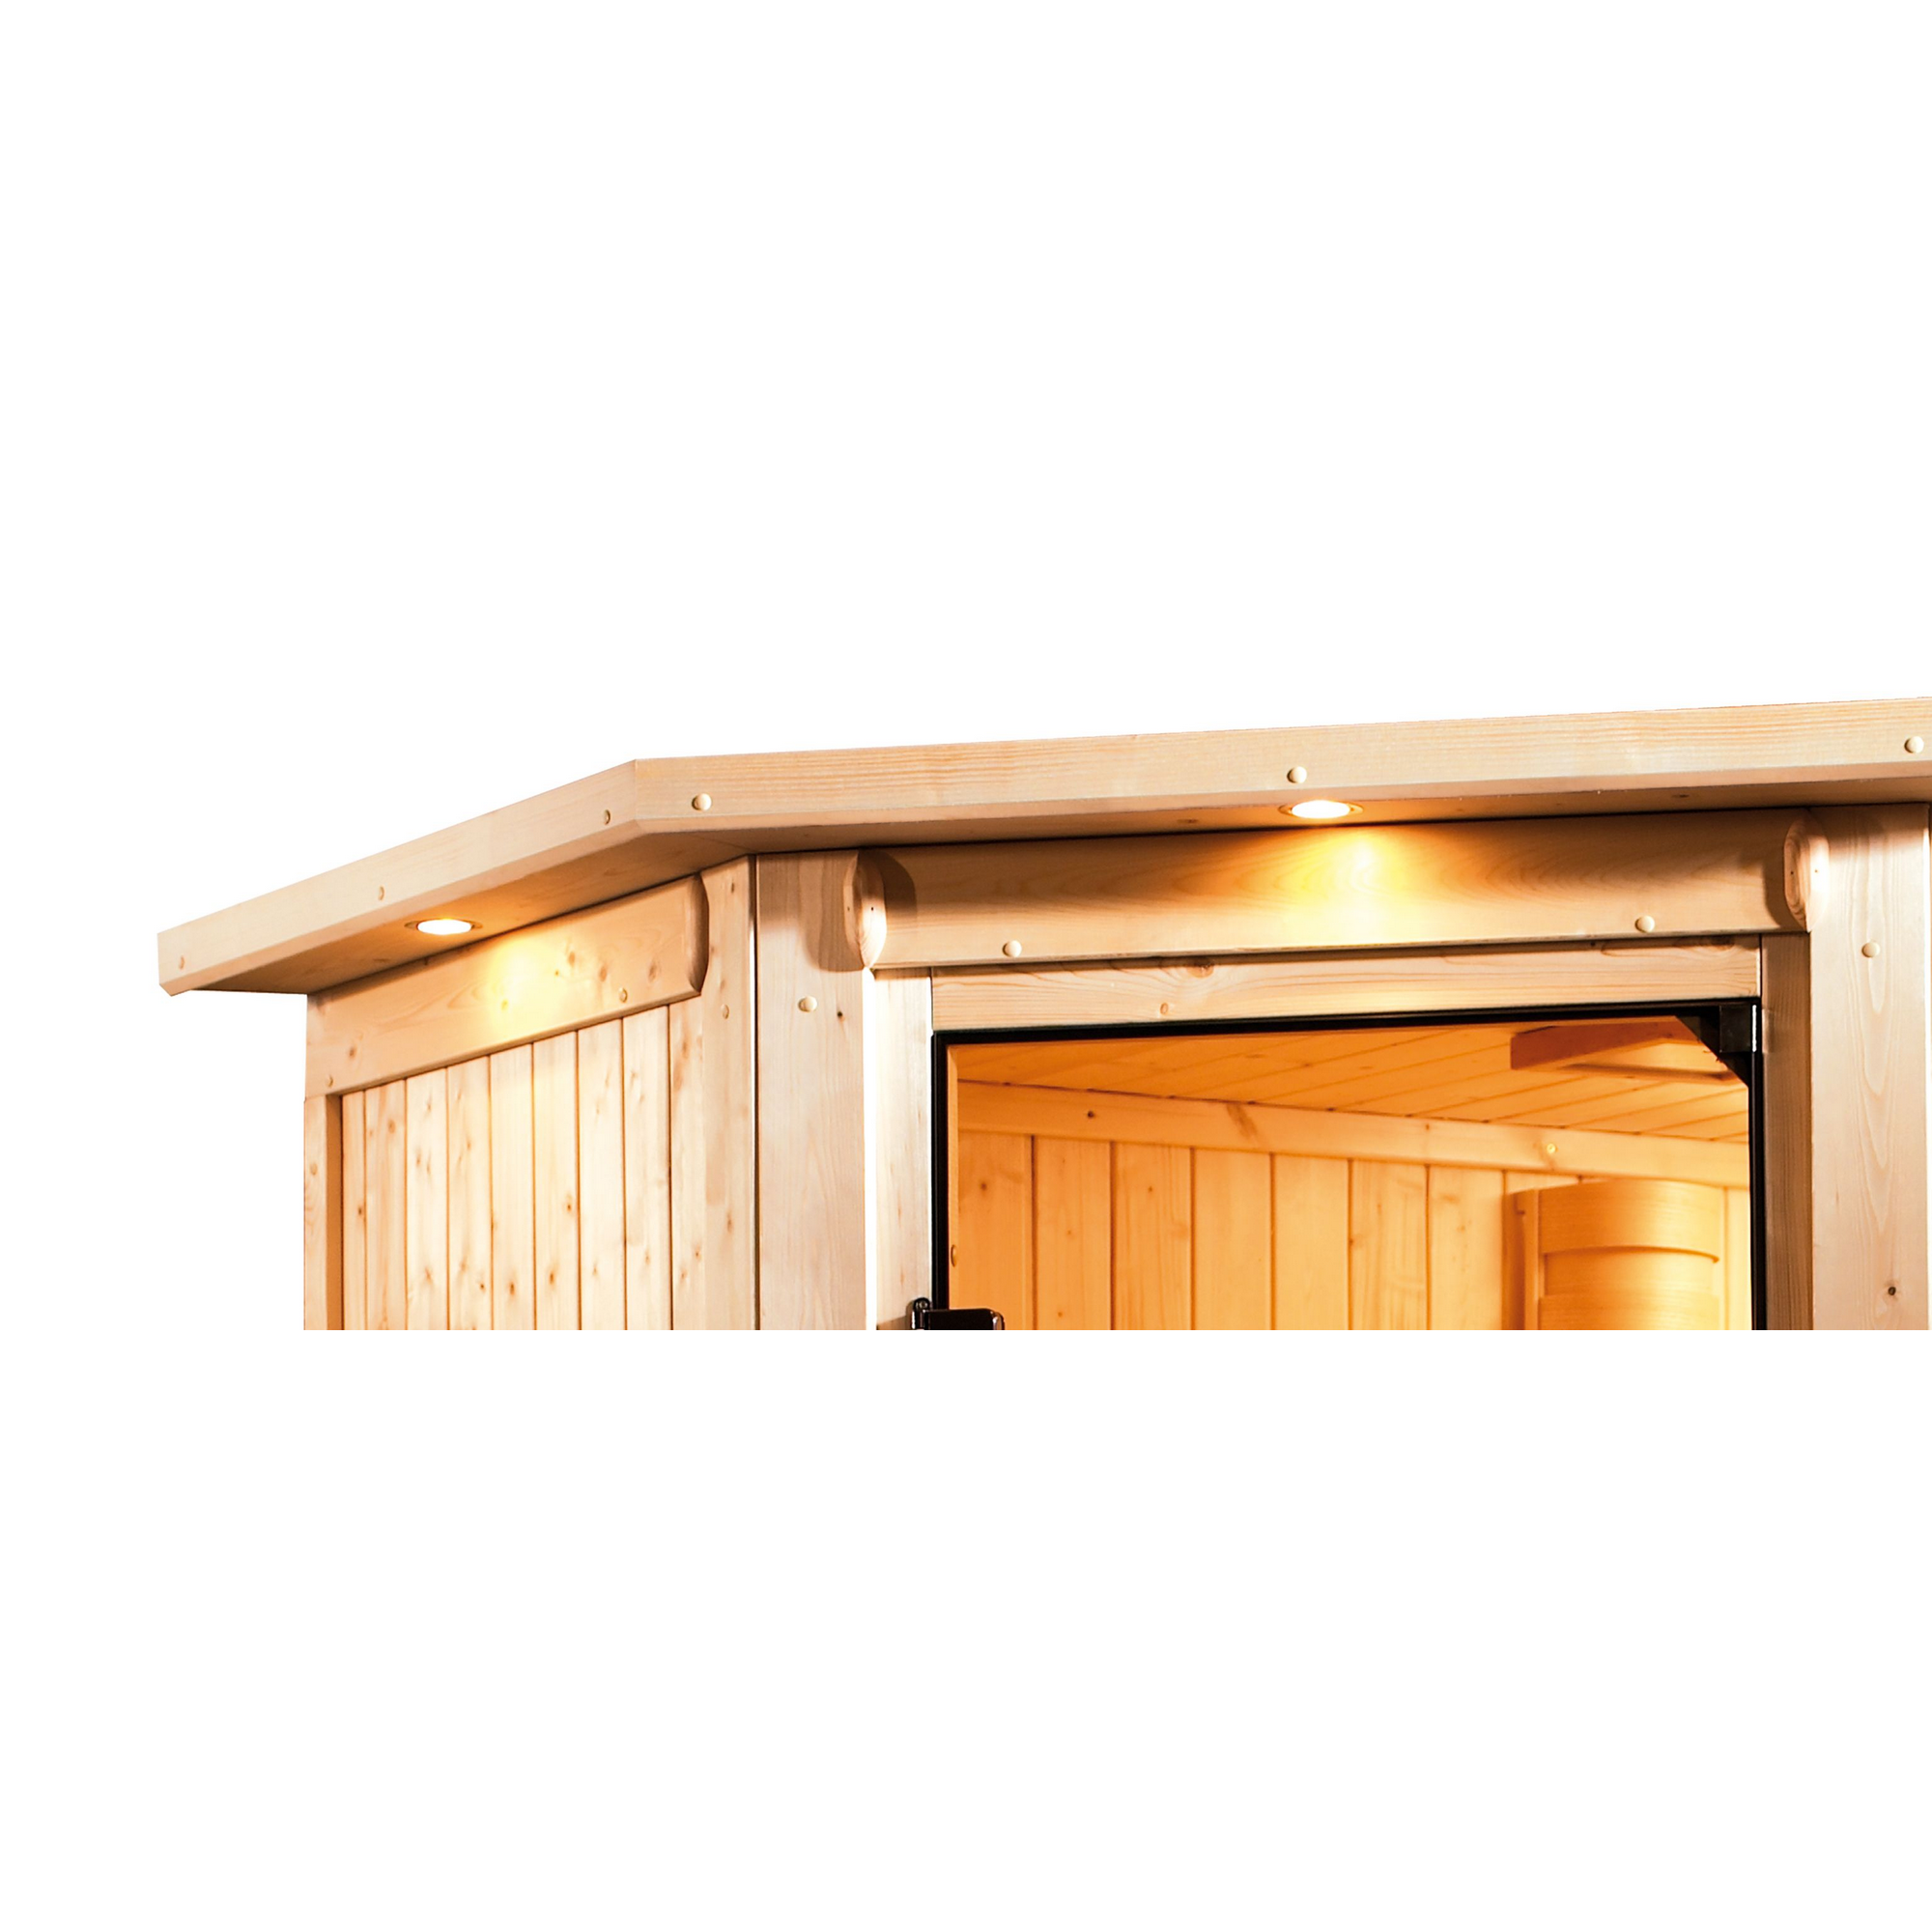 Infrarotkabine 'Aya' naturbelassen mit Kranz und bronzierter Tür 9 kW Bio-Ofen externe Steuerung 245 x 245 x 202 cm + product picture